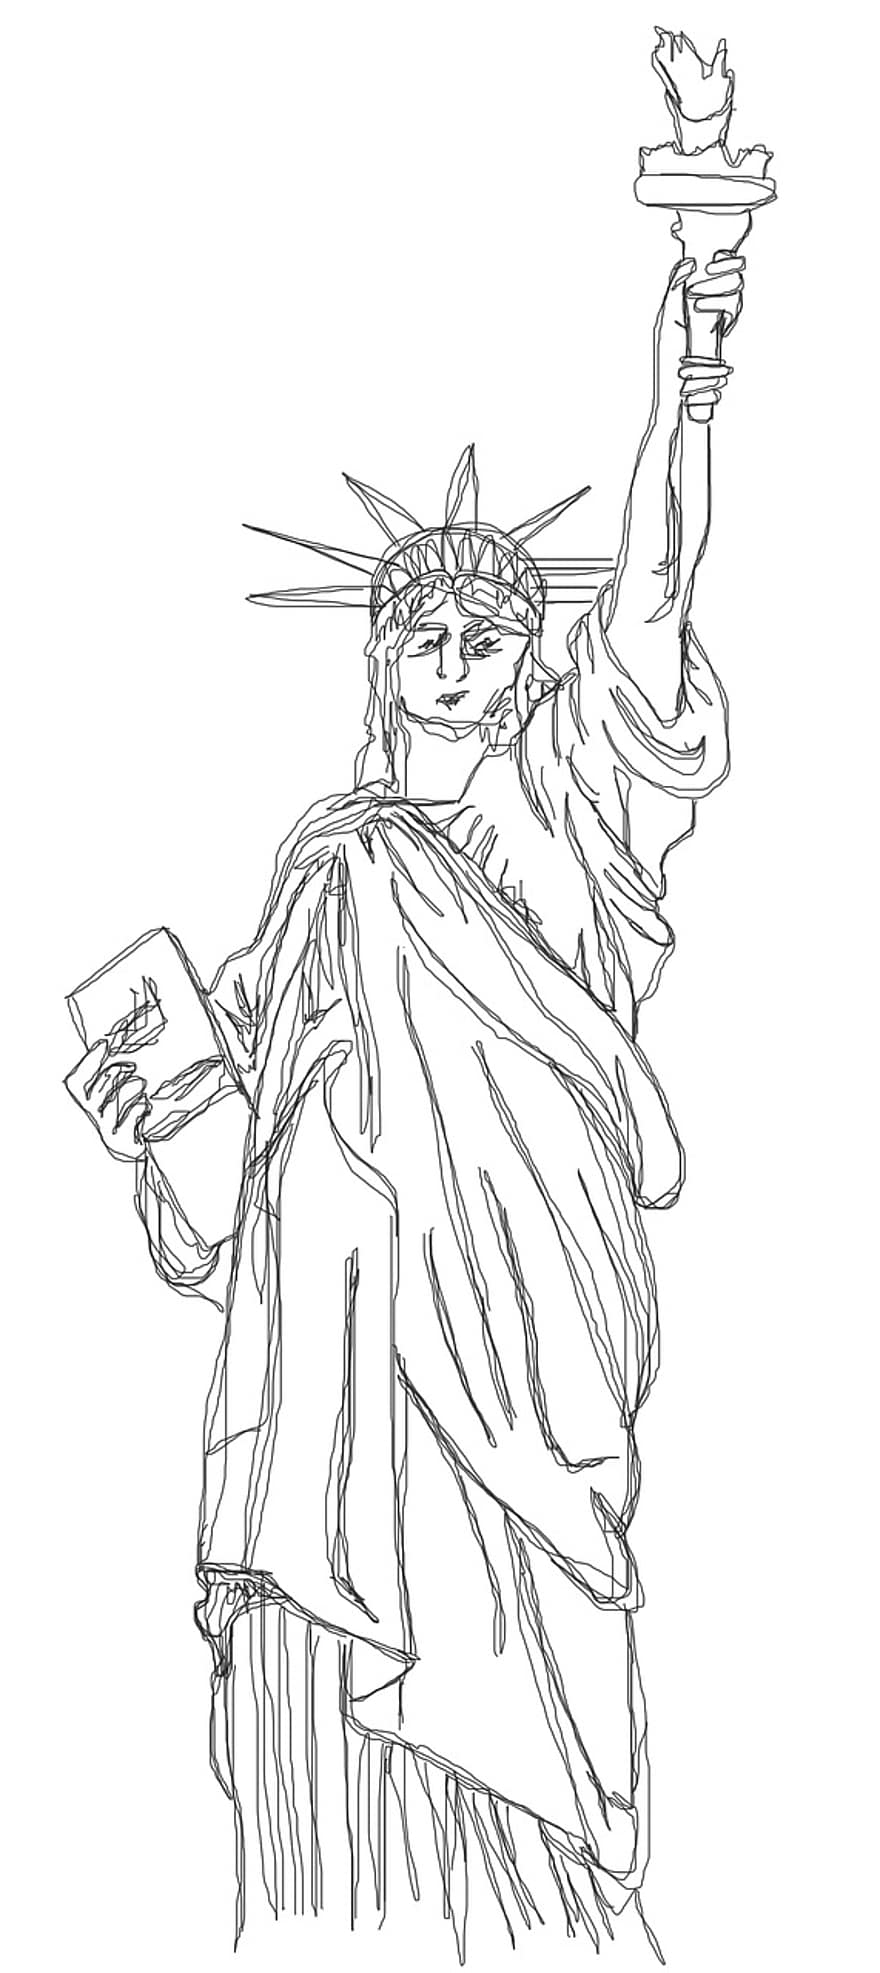 Brīvības statuja, Amerika, Ņujorka, statuja, dom, simbols, u s, augstums, lāpu, doodle, doodles